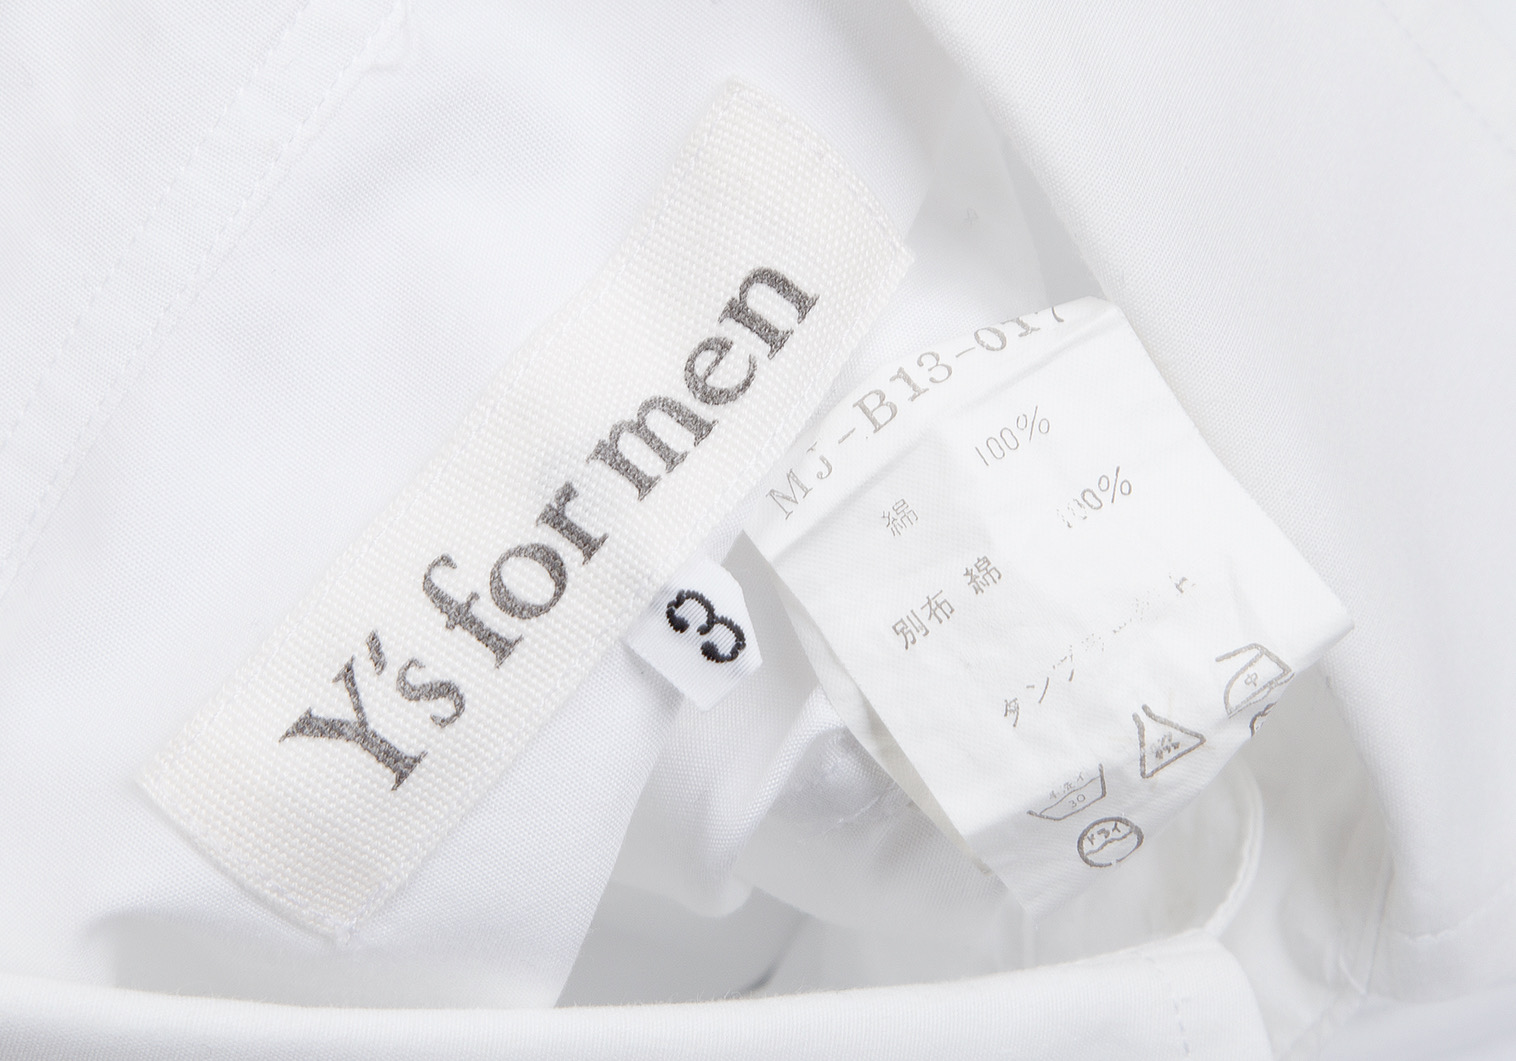 ワイズフォーメン フラップポケット　ホワイトシャツ　長袖 シャツ　3　日本製約52cm肩幅